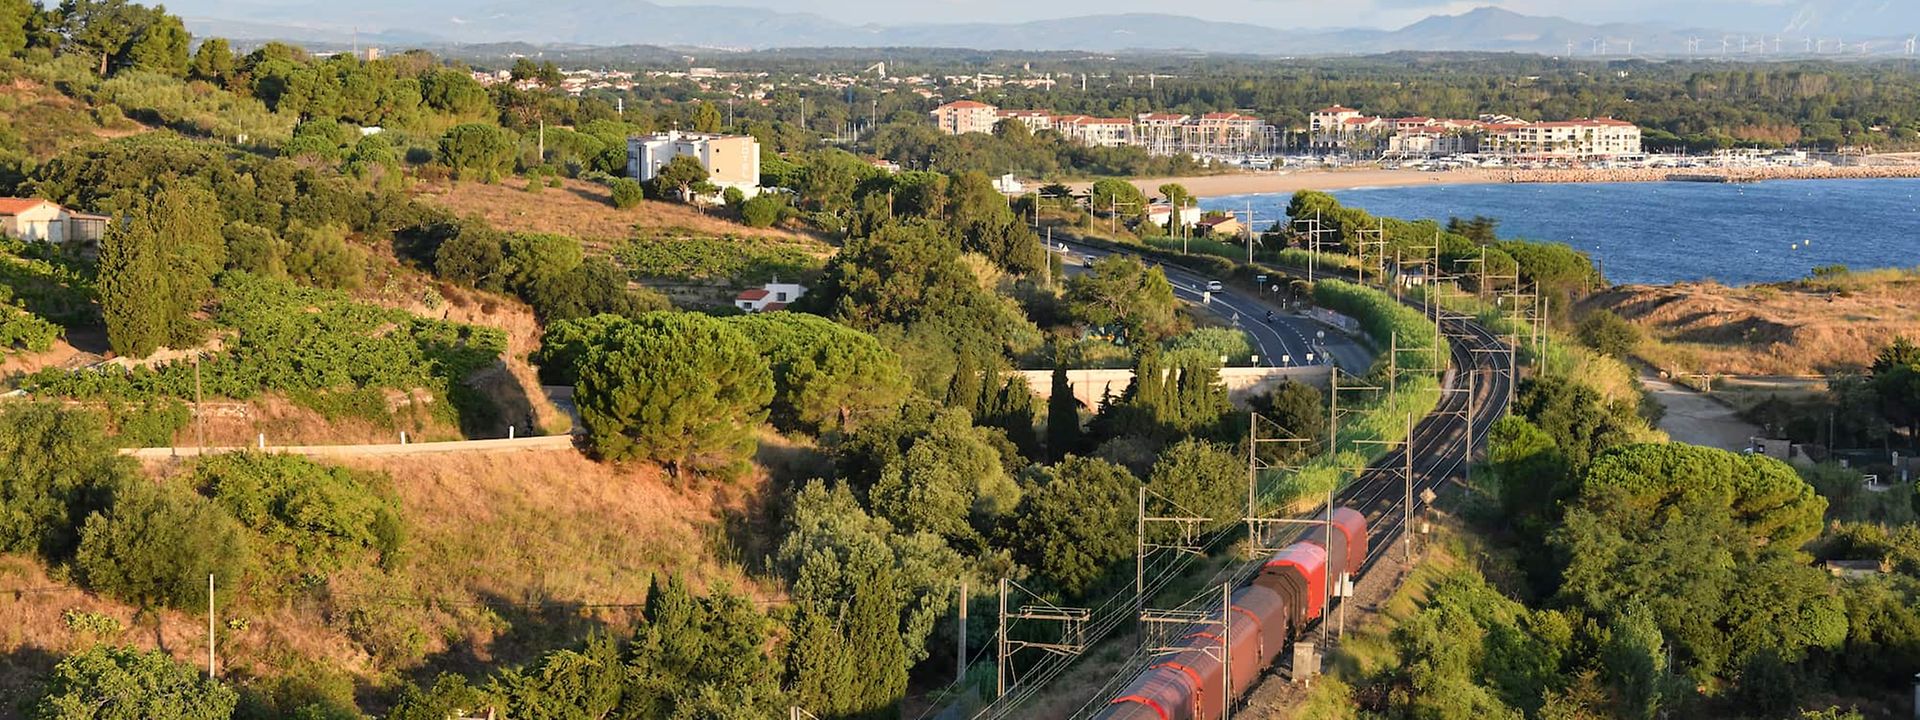 A train travels through a Mediterranean landscape.